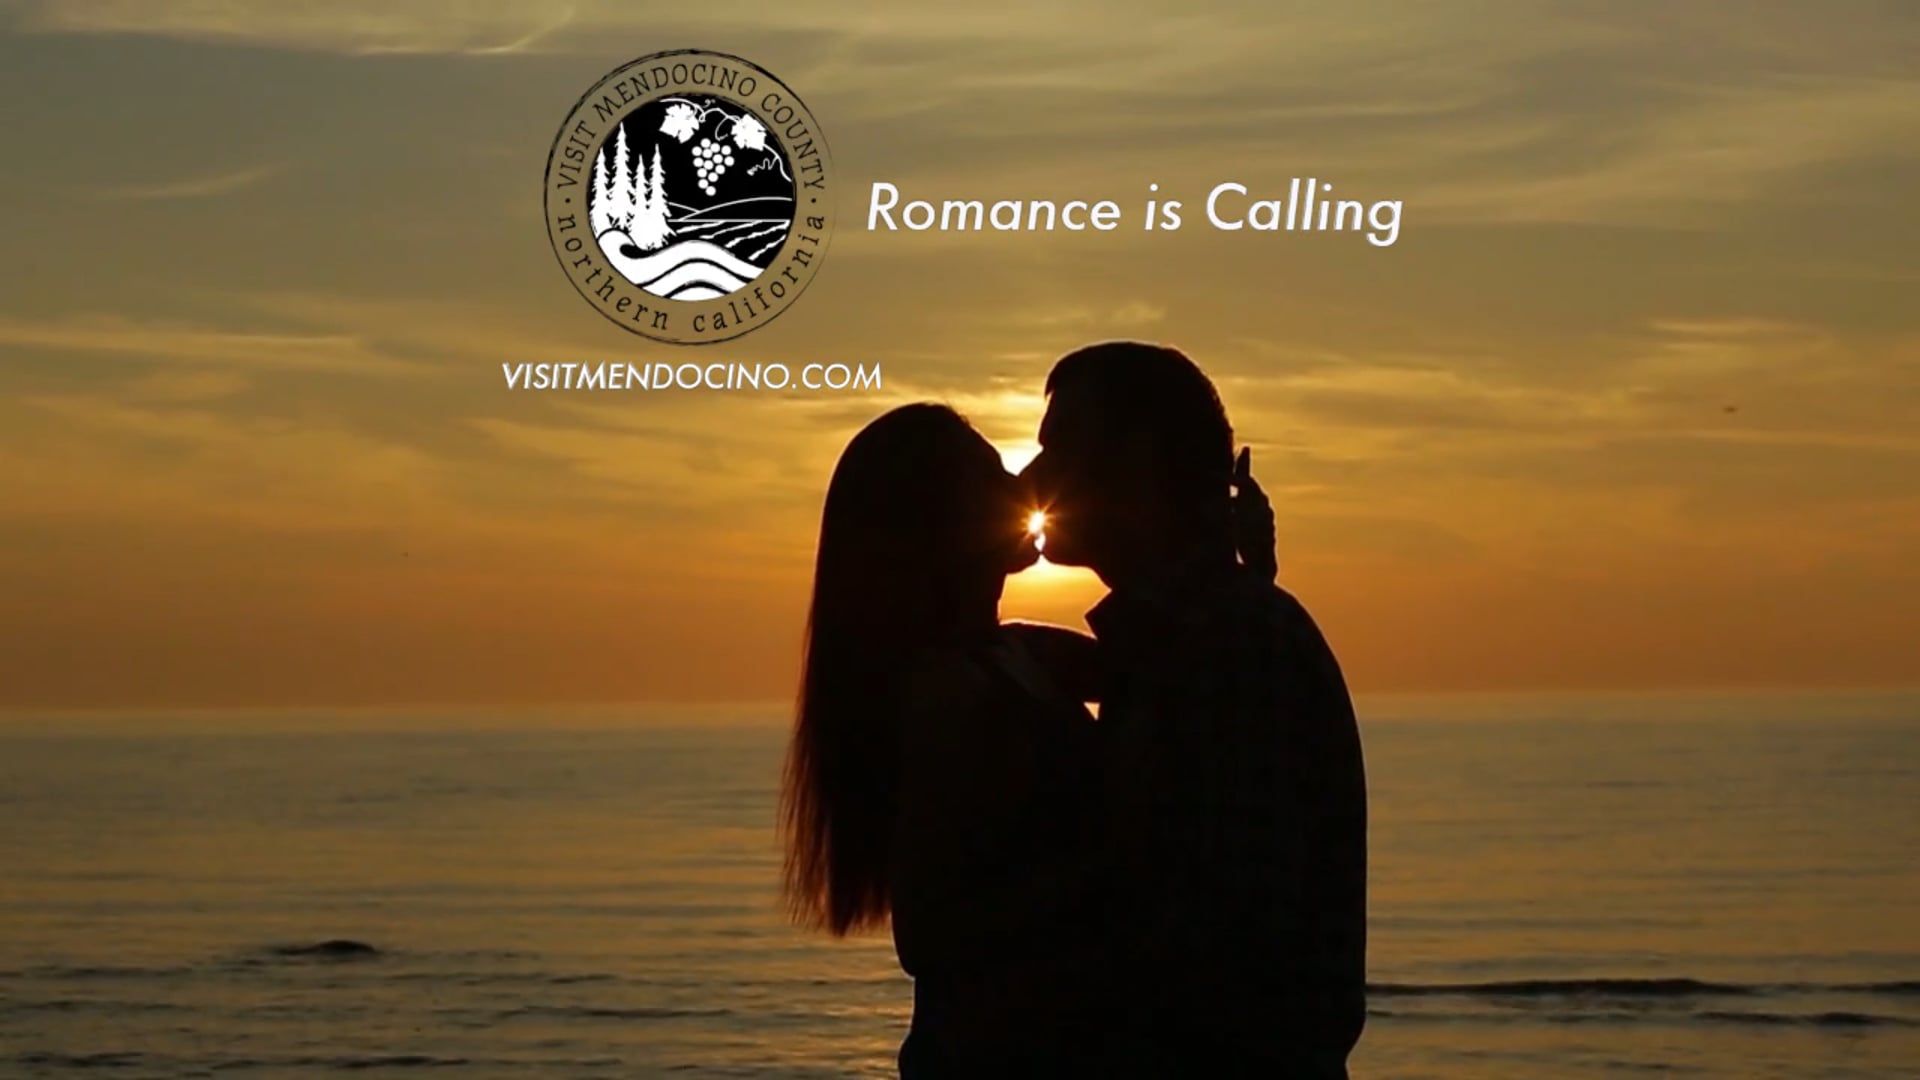 Visit Mendocino "Romance" Commercial